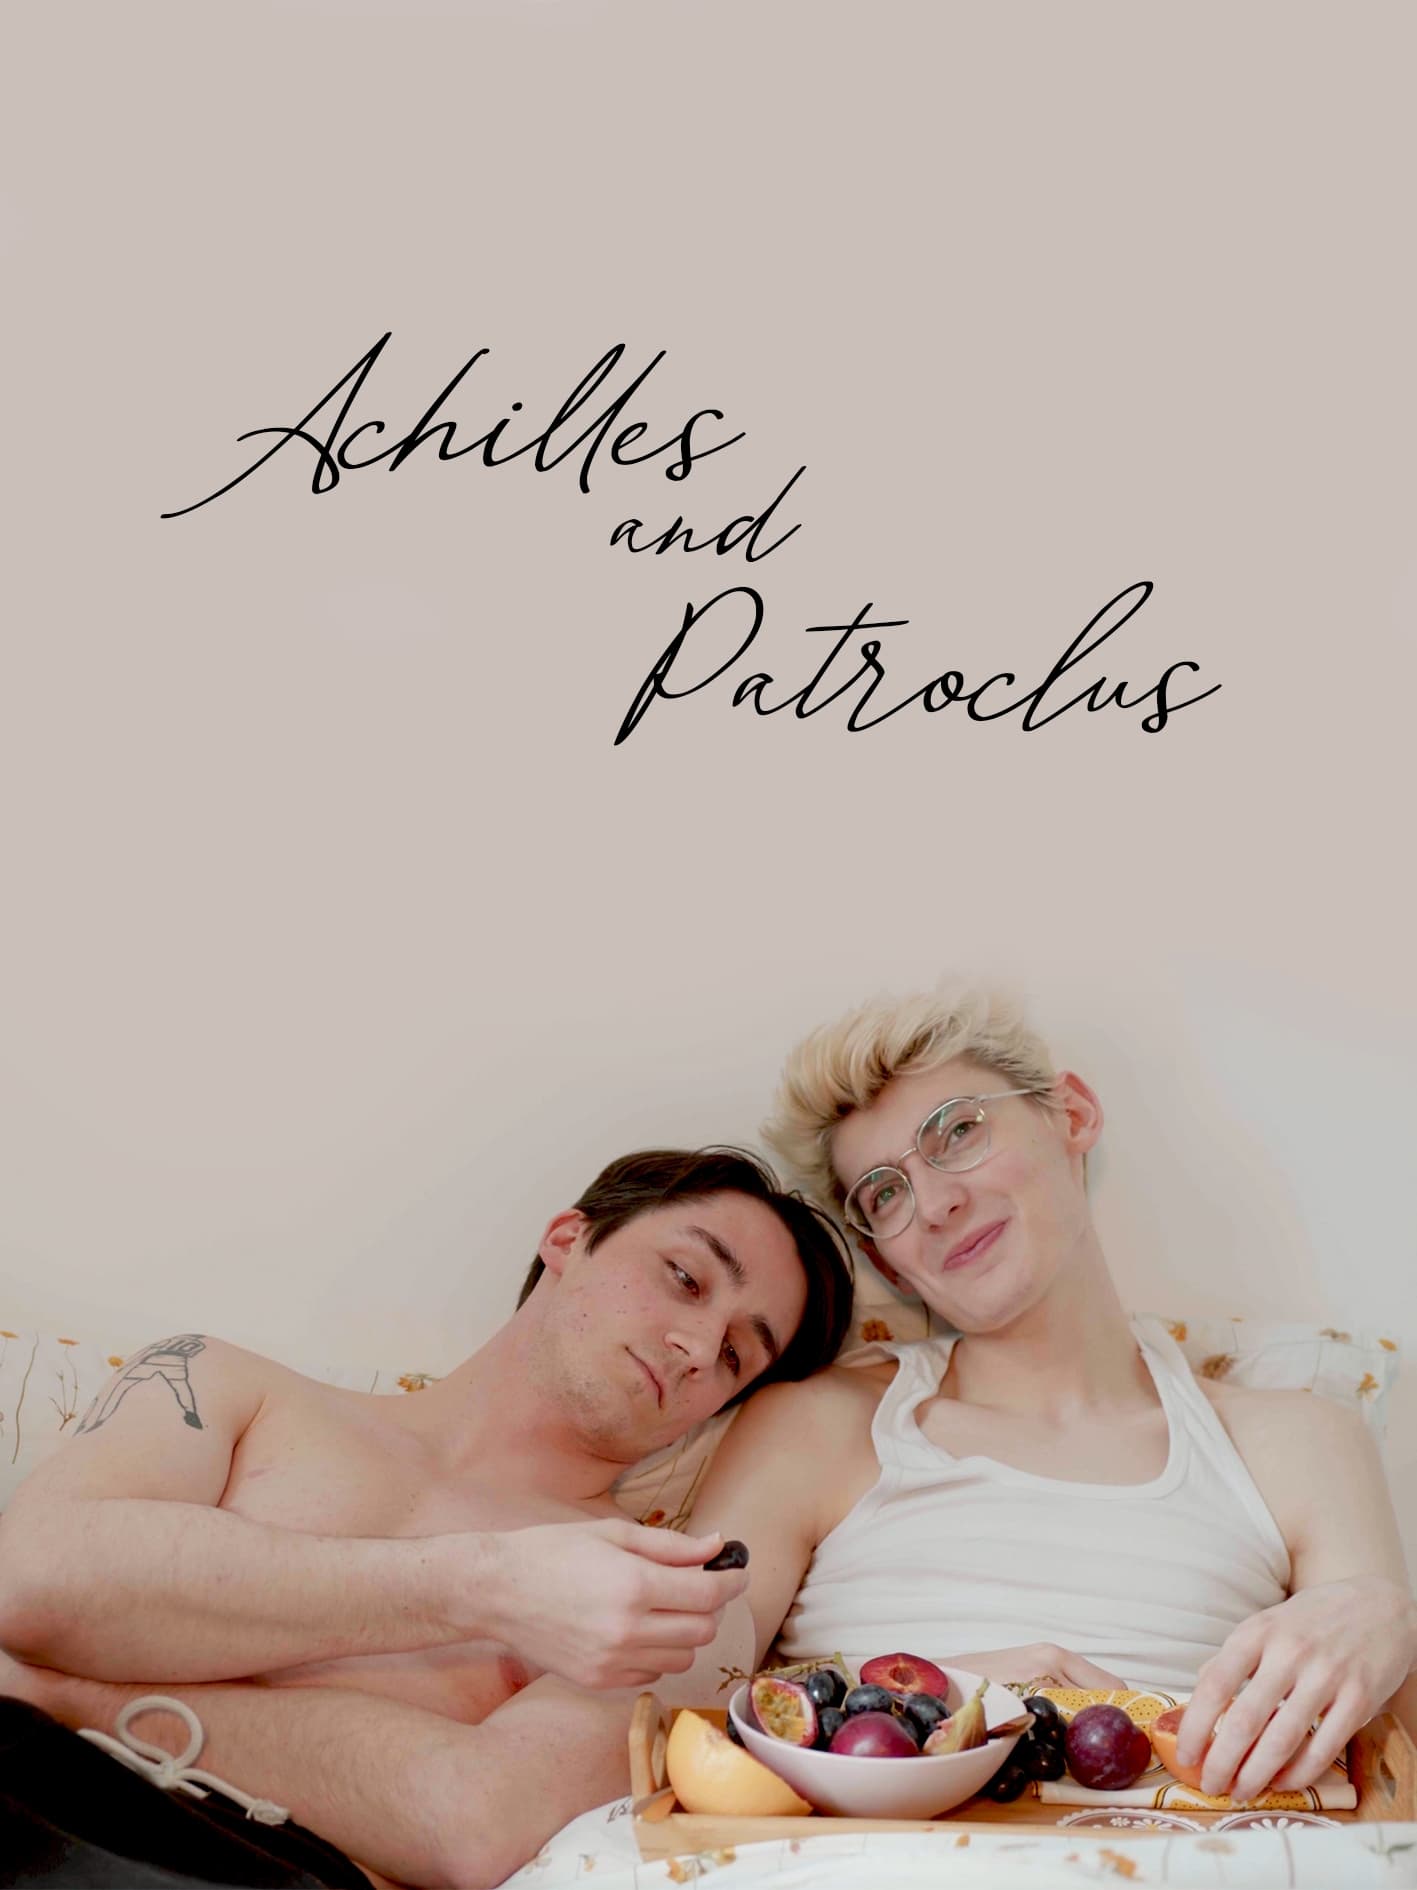 achilles and patroclus